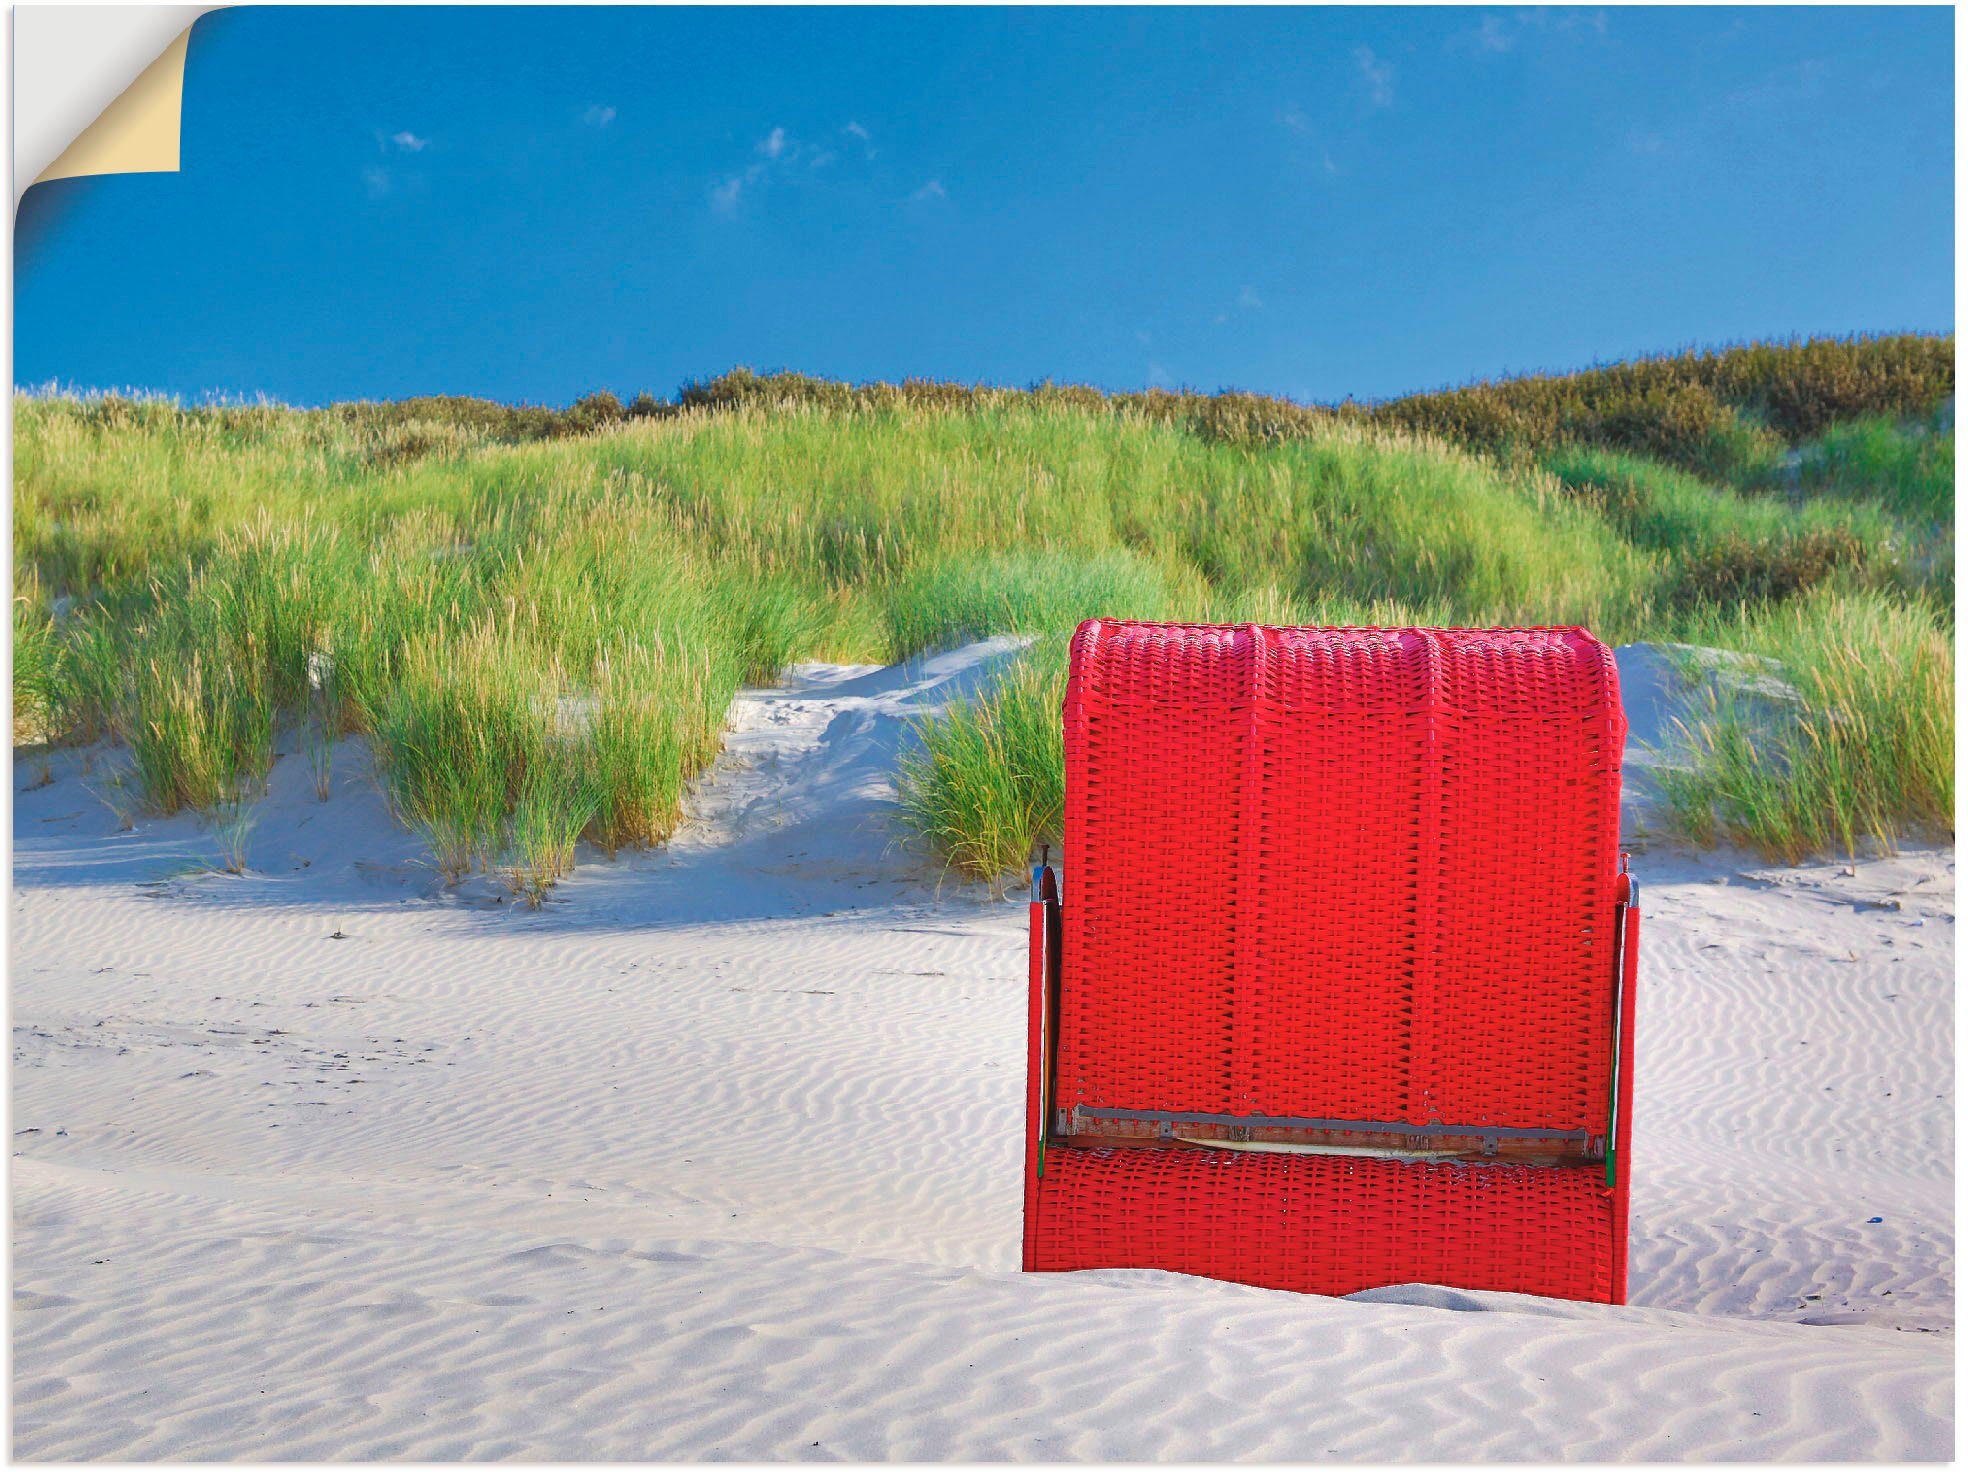 Artland Artprint Rode strandstoel in vele afmetingen & productsoorten -artprint op linnen, poster, muursticker / wandfolie ook geschikt voor de badkamer (1 stuk)